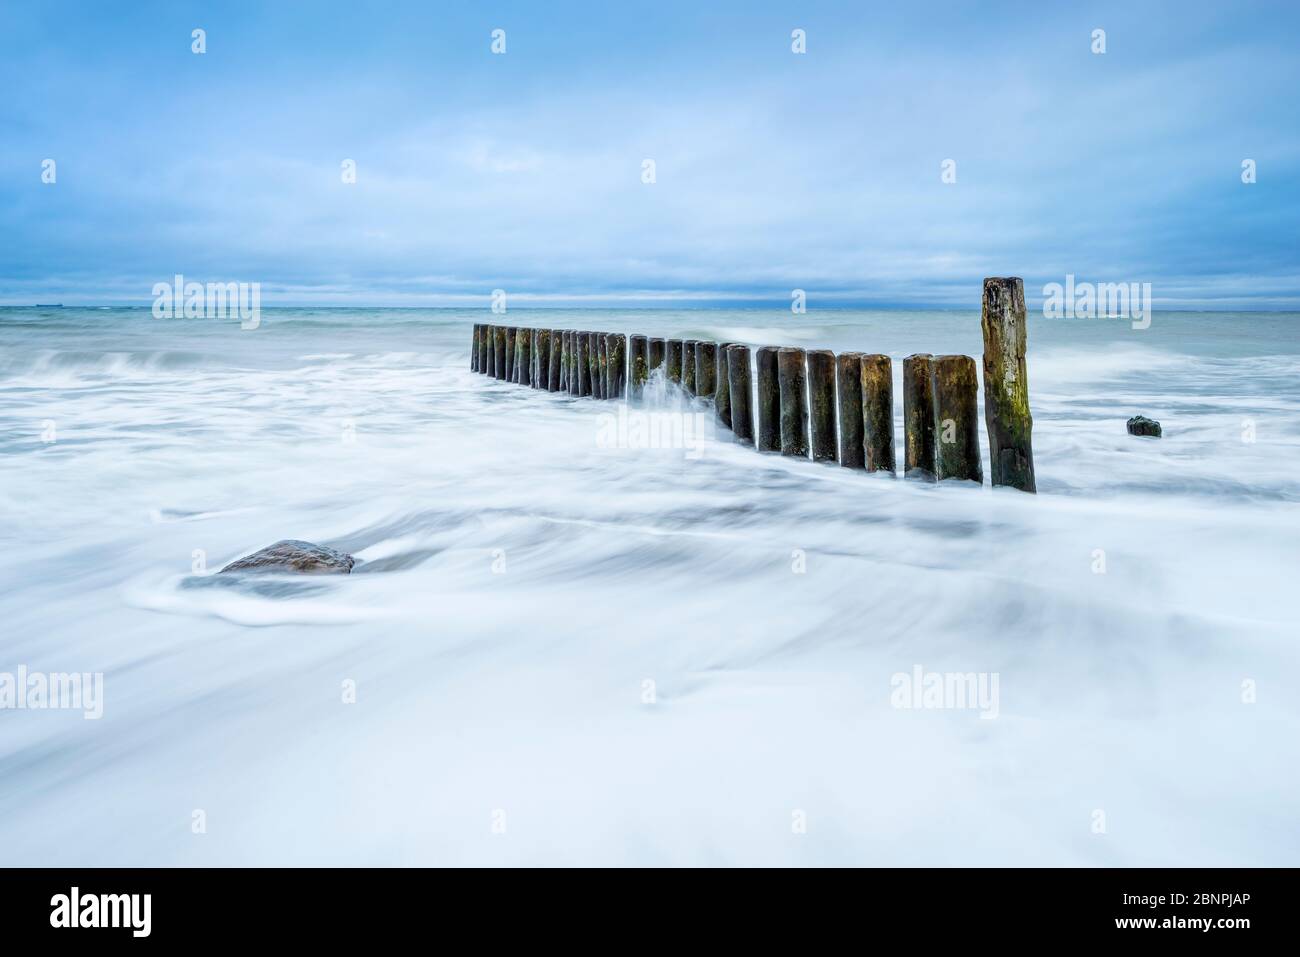 Groyne sur la plage de la mer Baltique, ciel nuageux, mer orageux, près de Rostock, Mecklenburg-Ouest Pomerania, Allemagne Banque D'Images